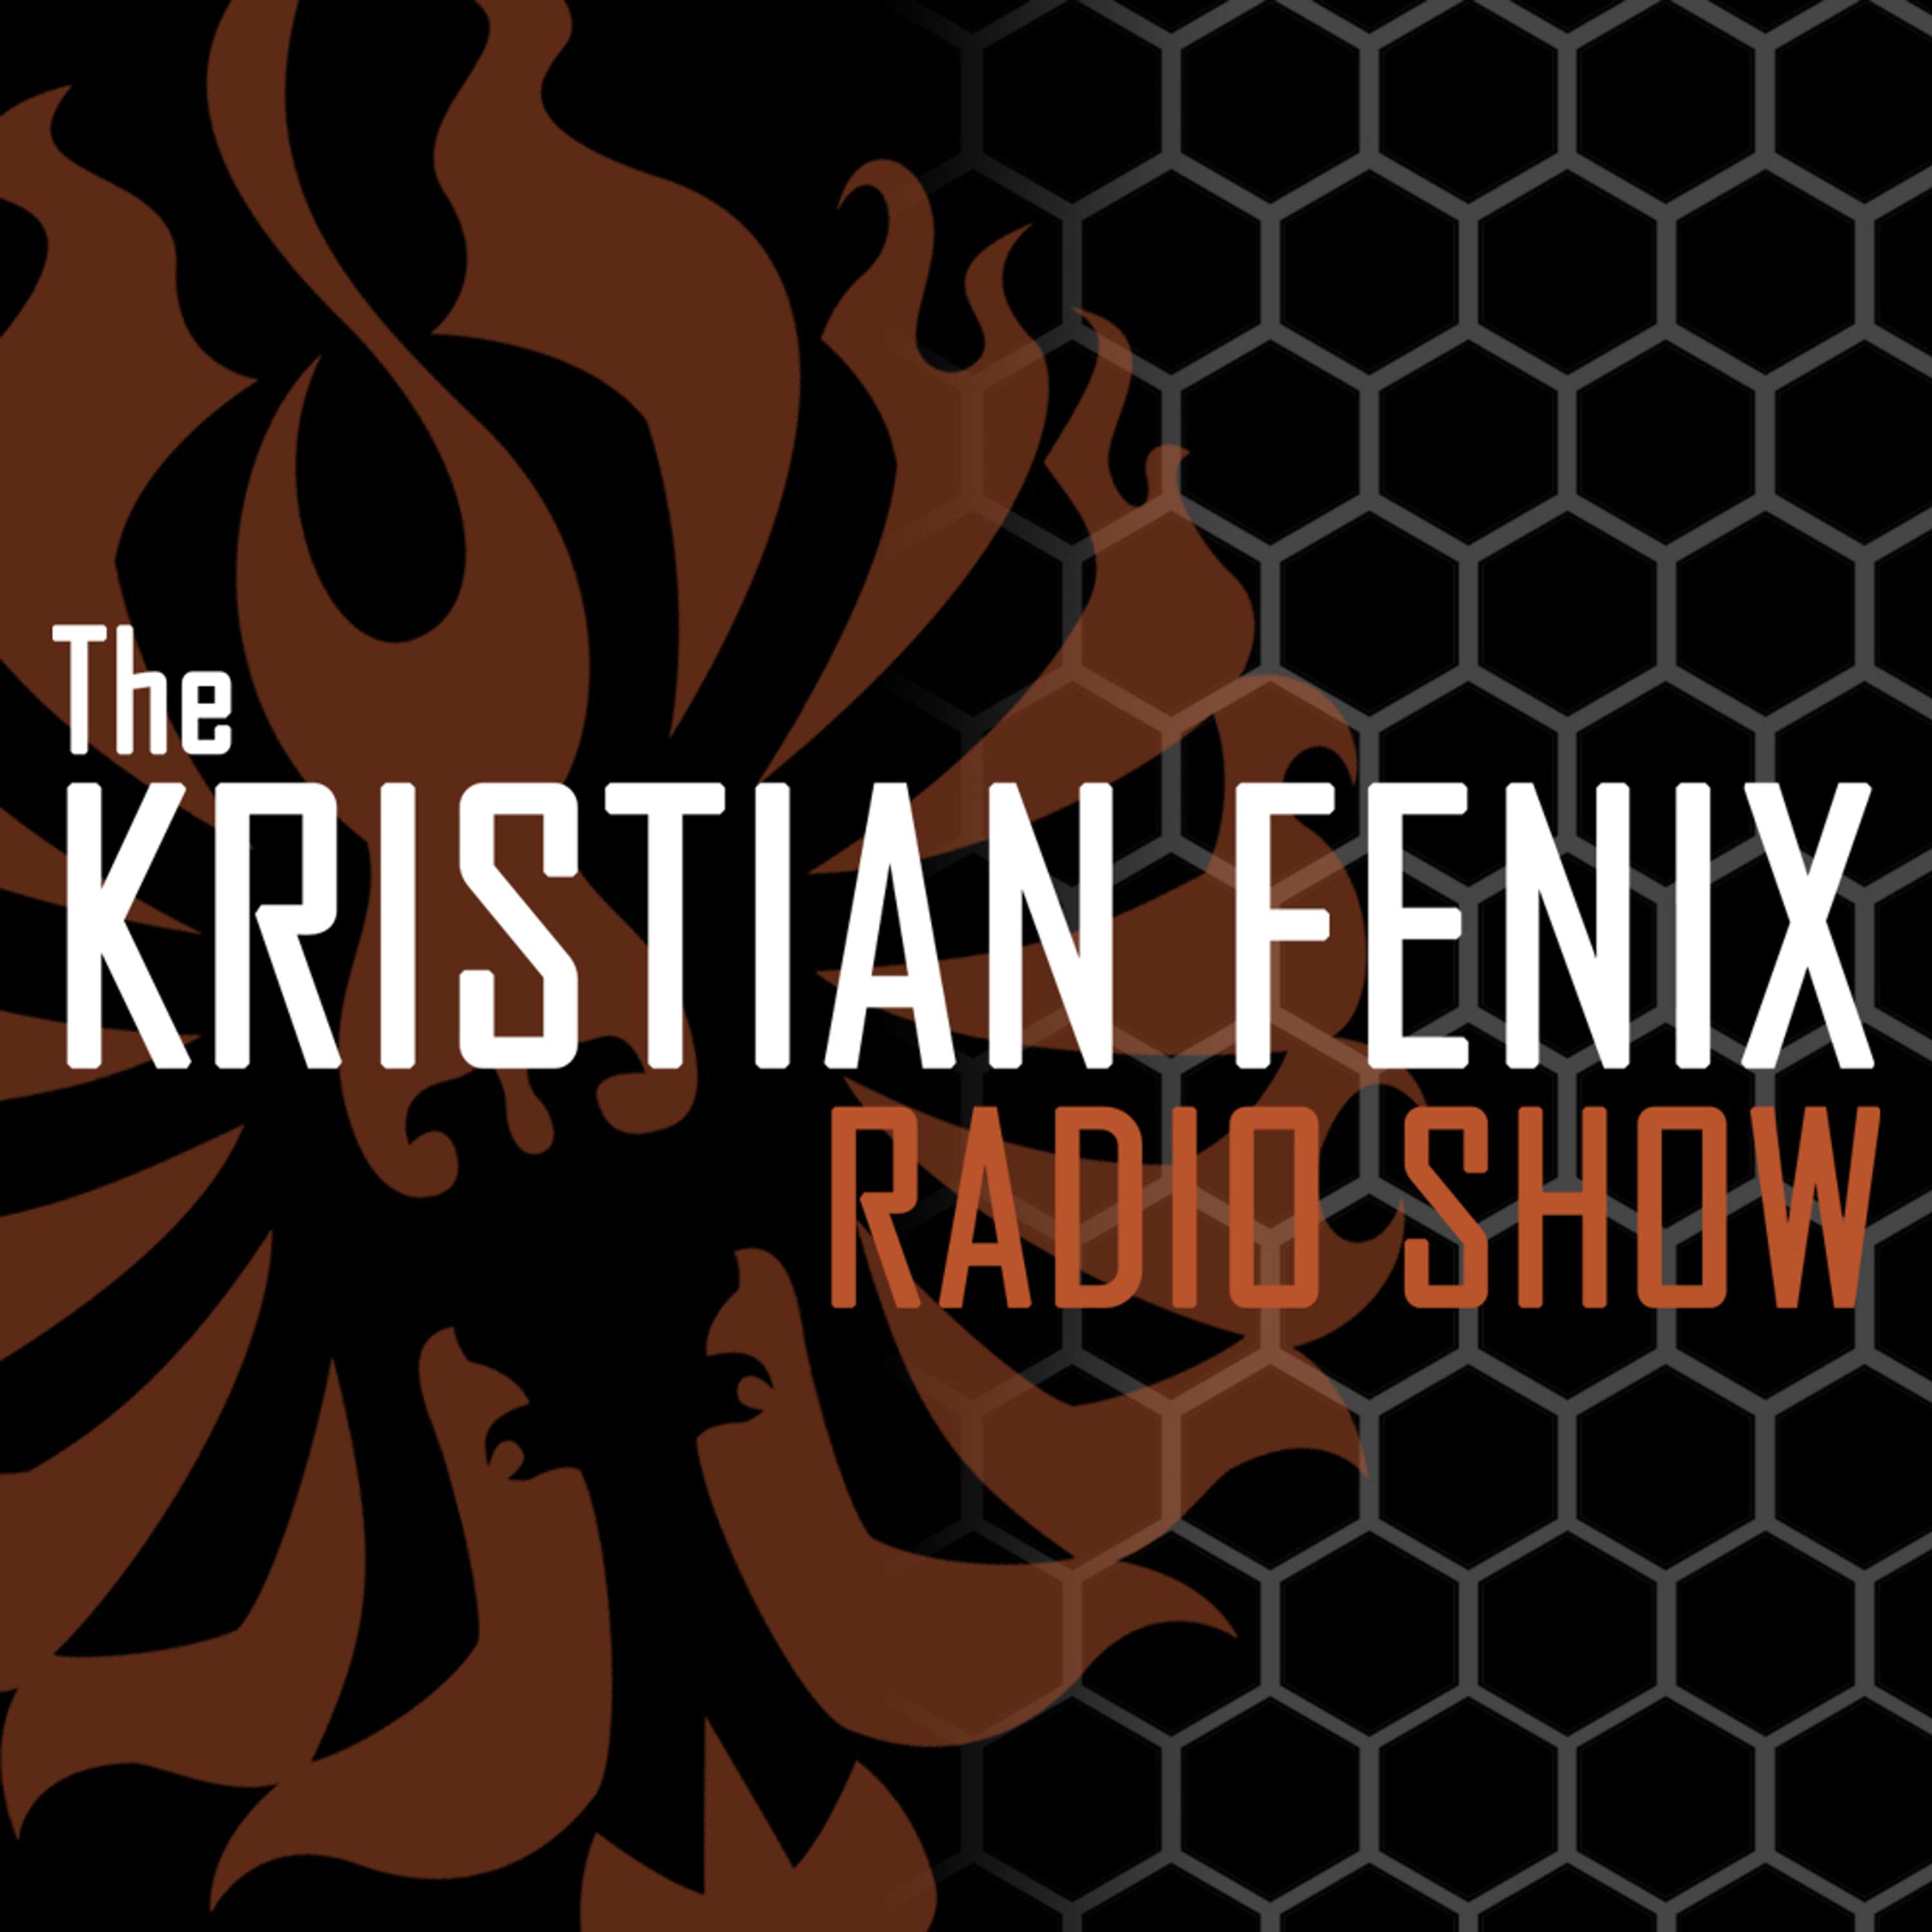 Best Of KFRS Podcast: Wednesday, September 8th 2021